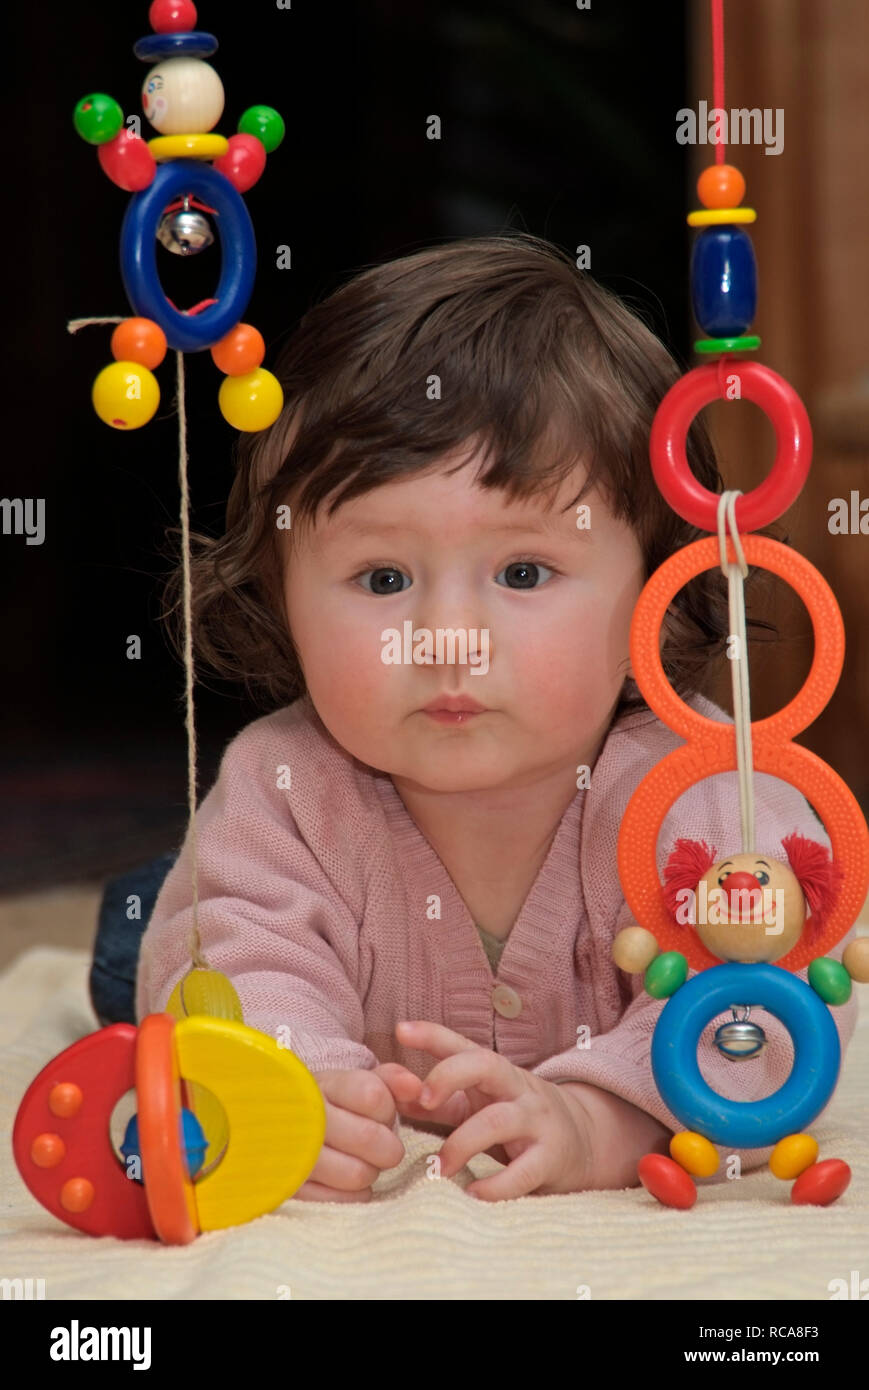 Baby im Zimmer liegt auf dem Boden, Spielzeug | baby giacente in una camera al piano, giocando con i giocattoli Foto Stock